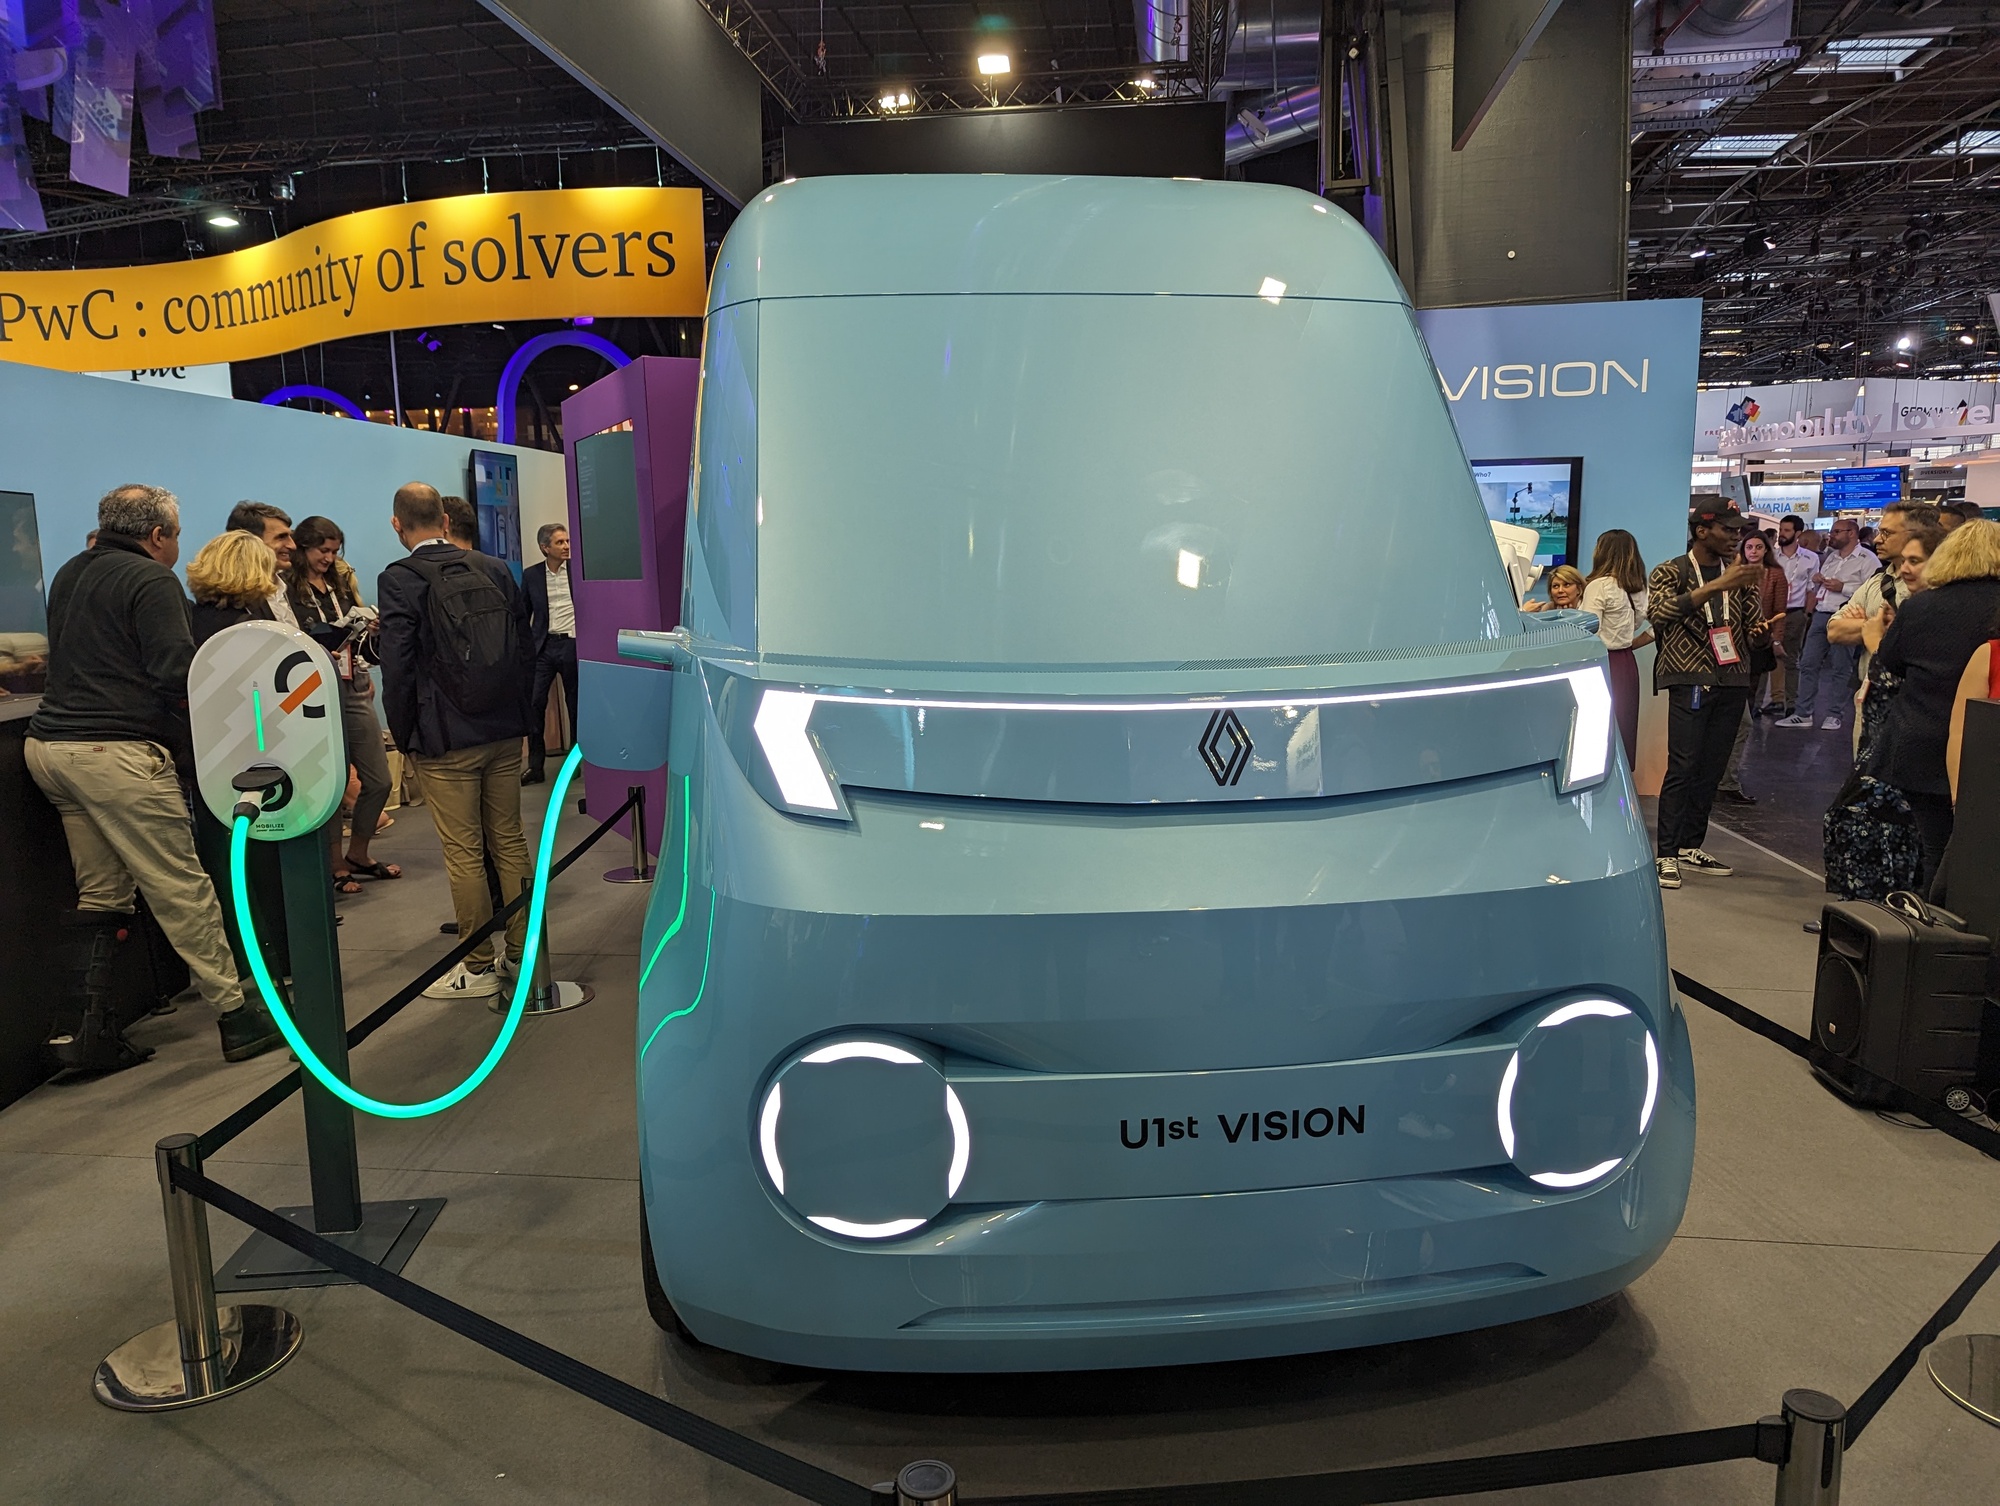 VivaTech : un van de santé autonome pour rencontrer les patients où qu'ils se trouvent, le pari de Withings avec Software République